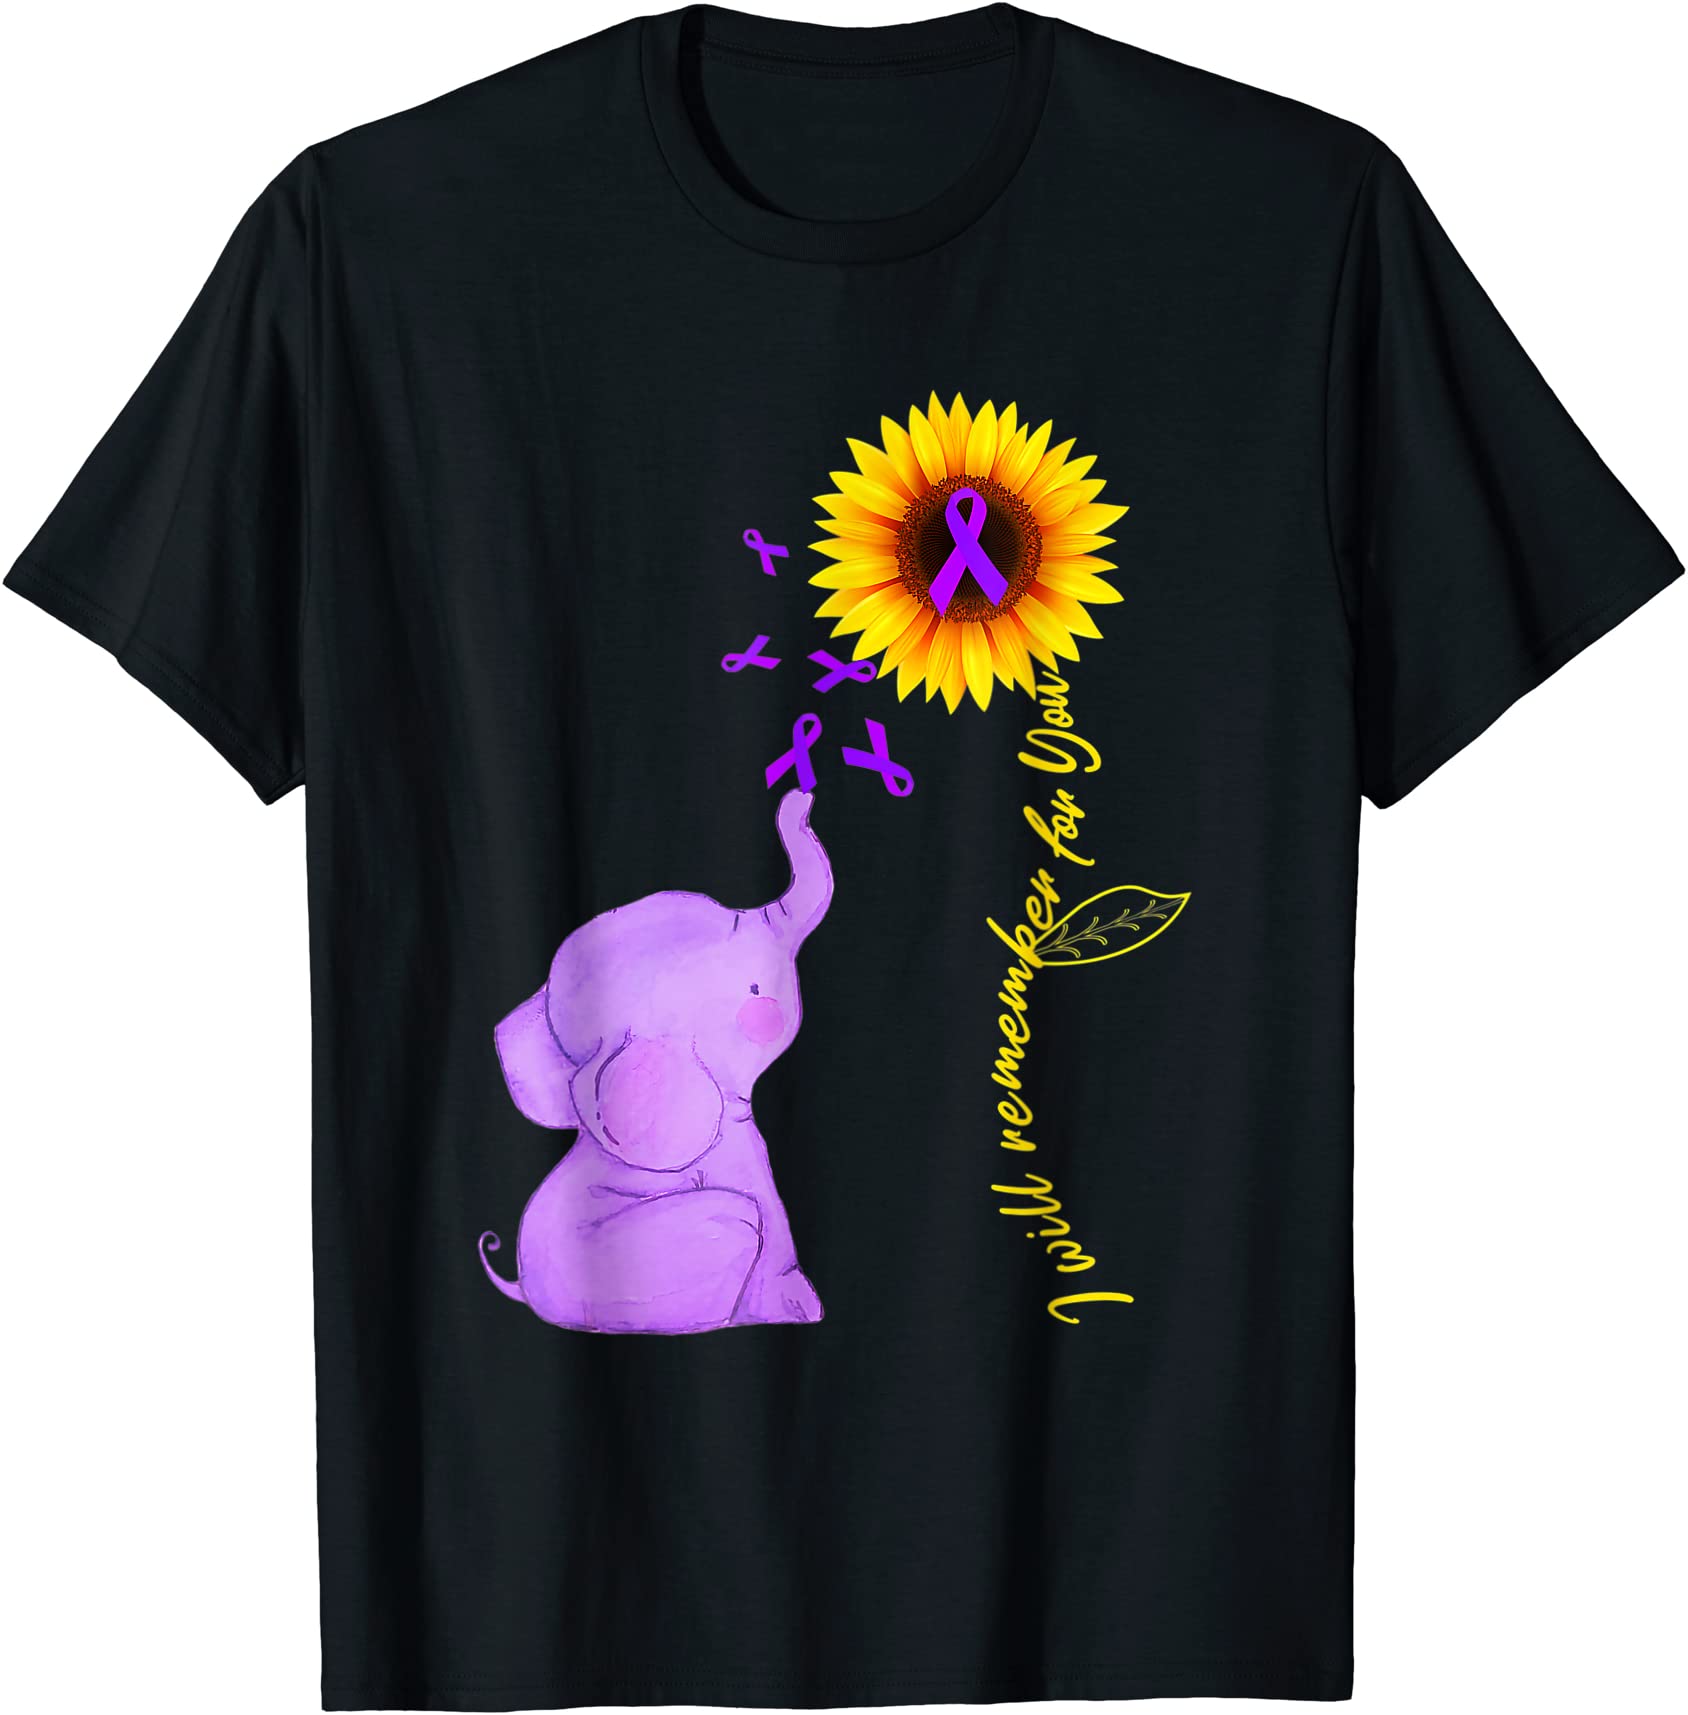 elephant i will remember for you sunflower alzheimer t shirt men - Buy ...